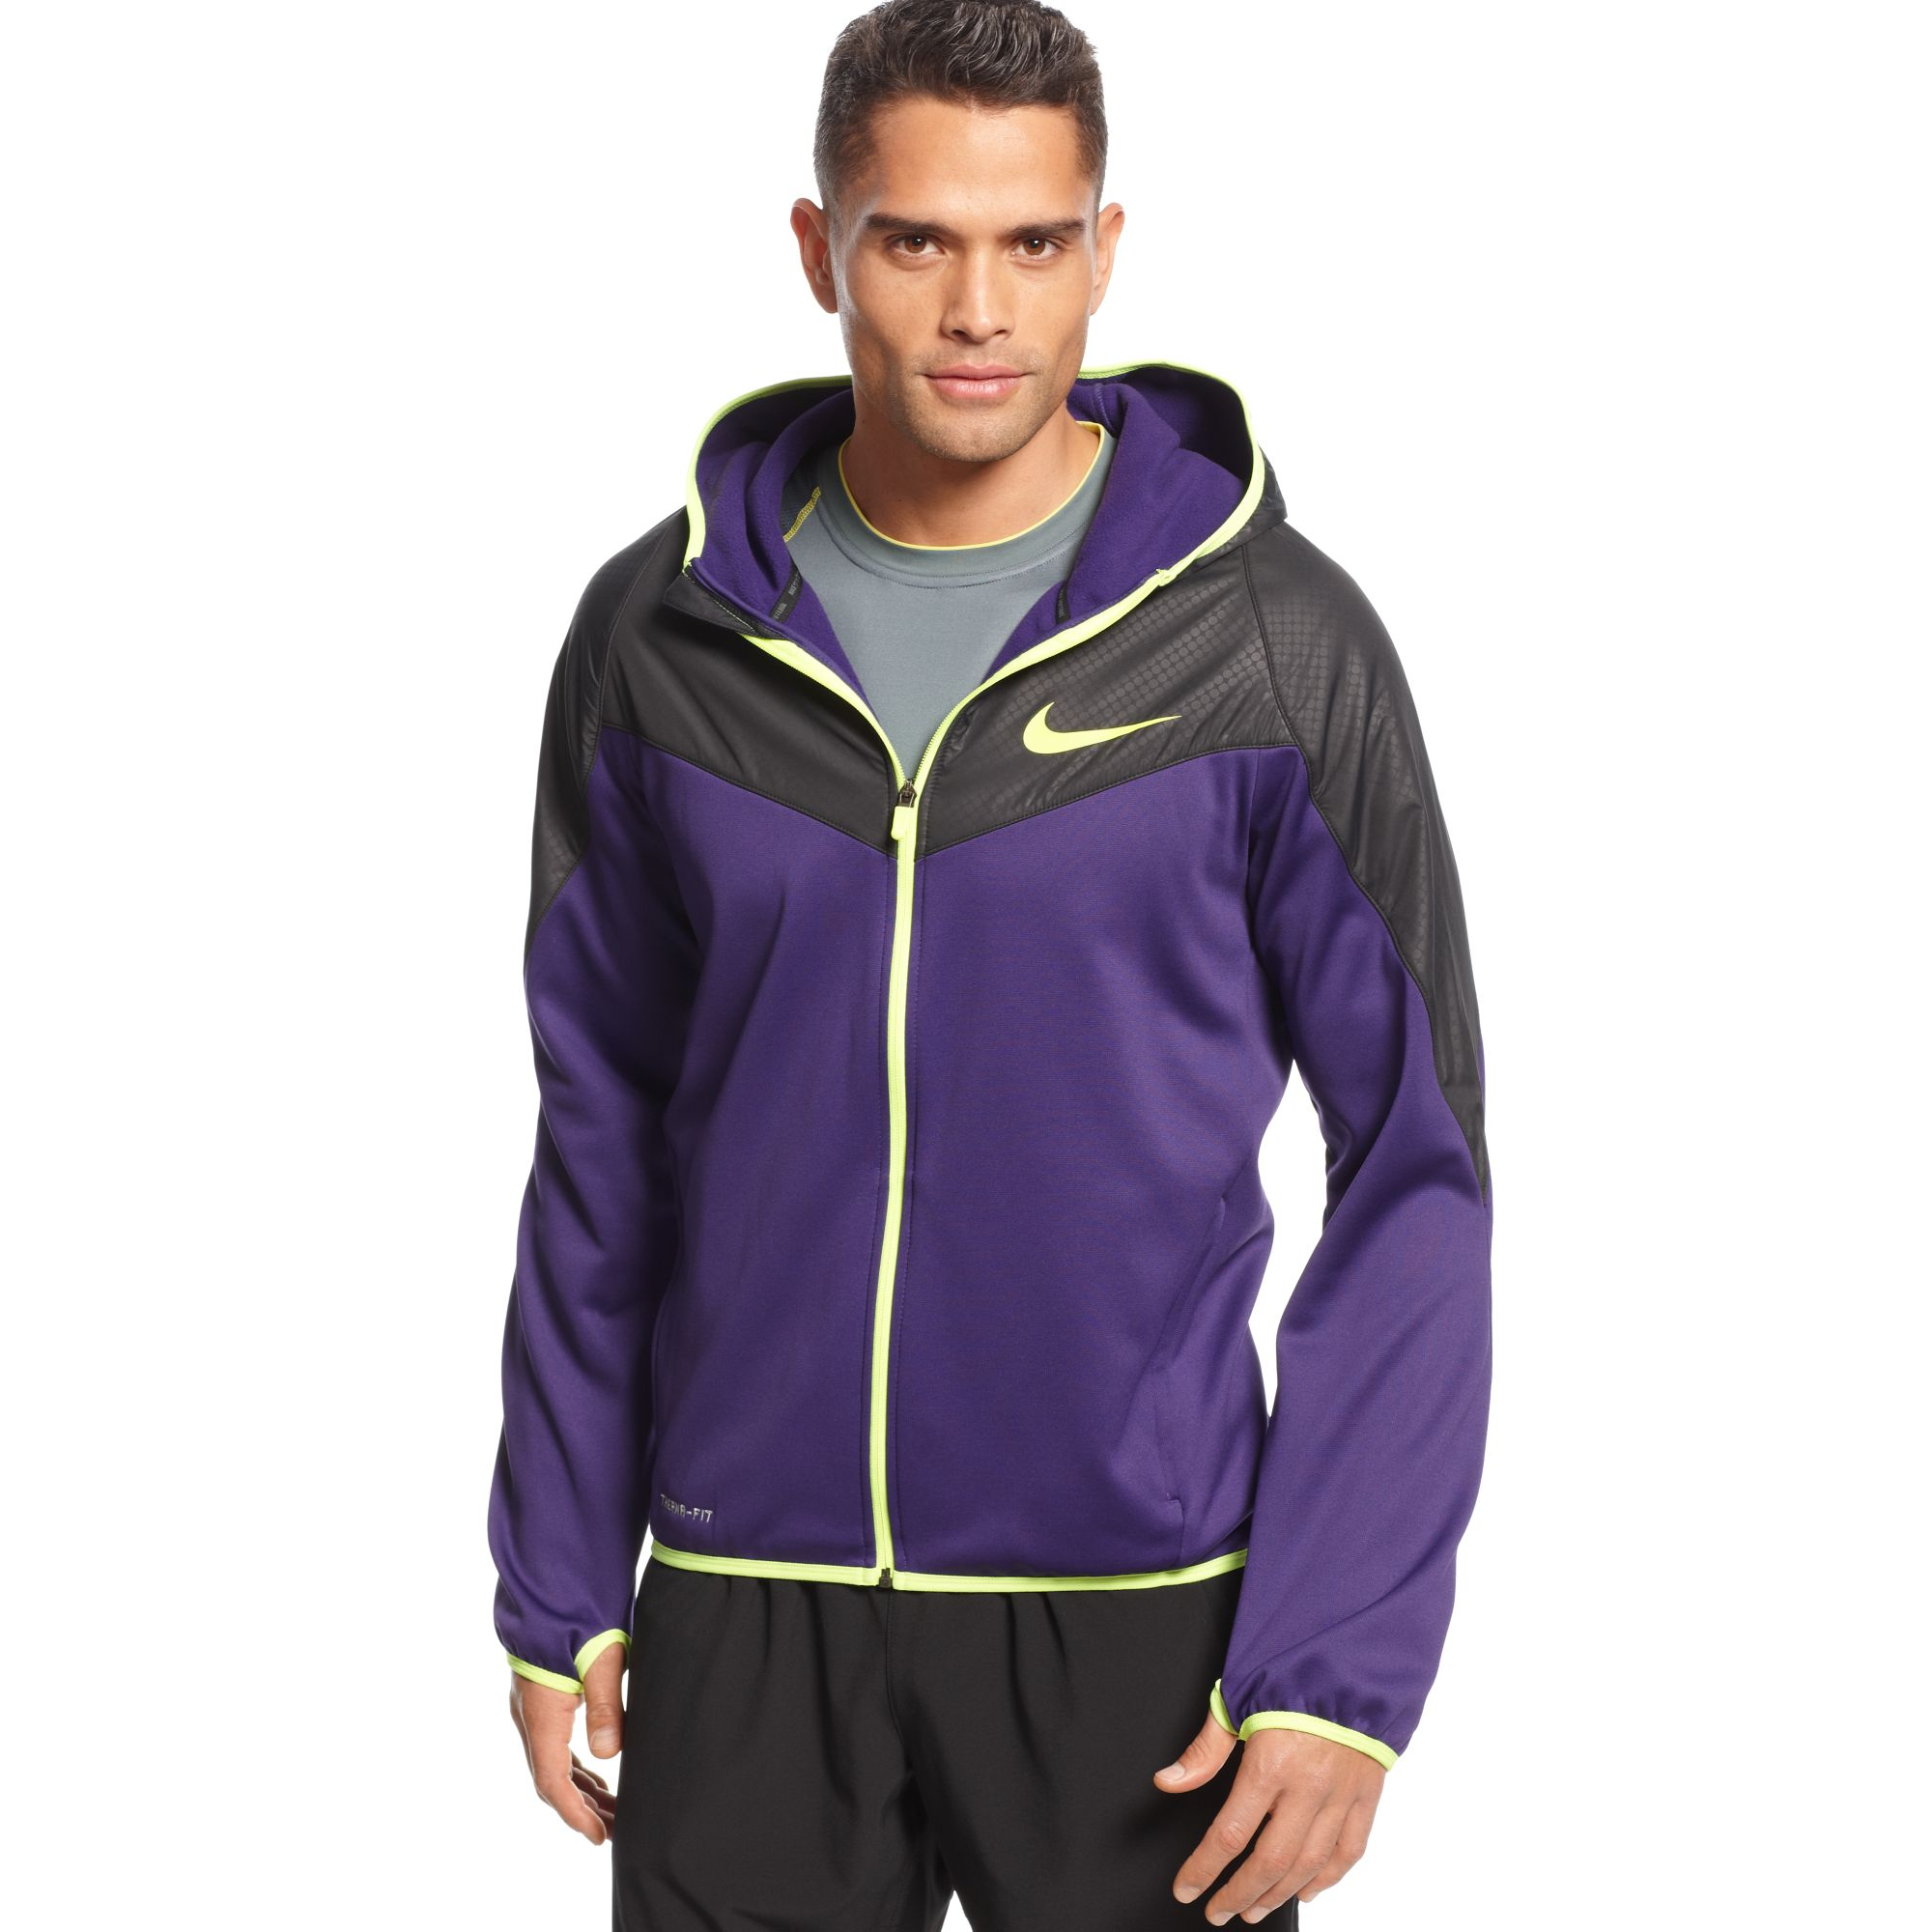 Nike Therma Fit Full Zip Gpx Fleece Hoodie in Purple for Men - Lyst